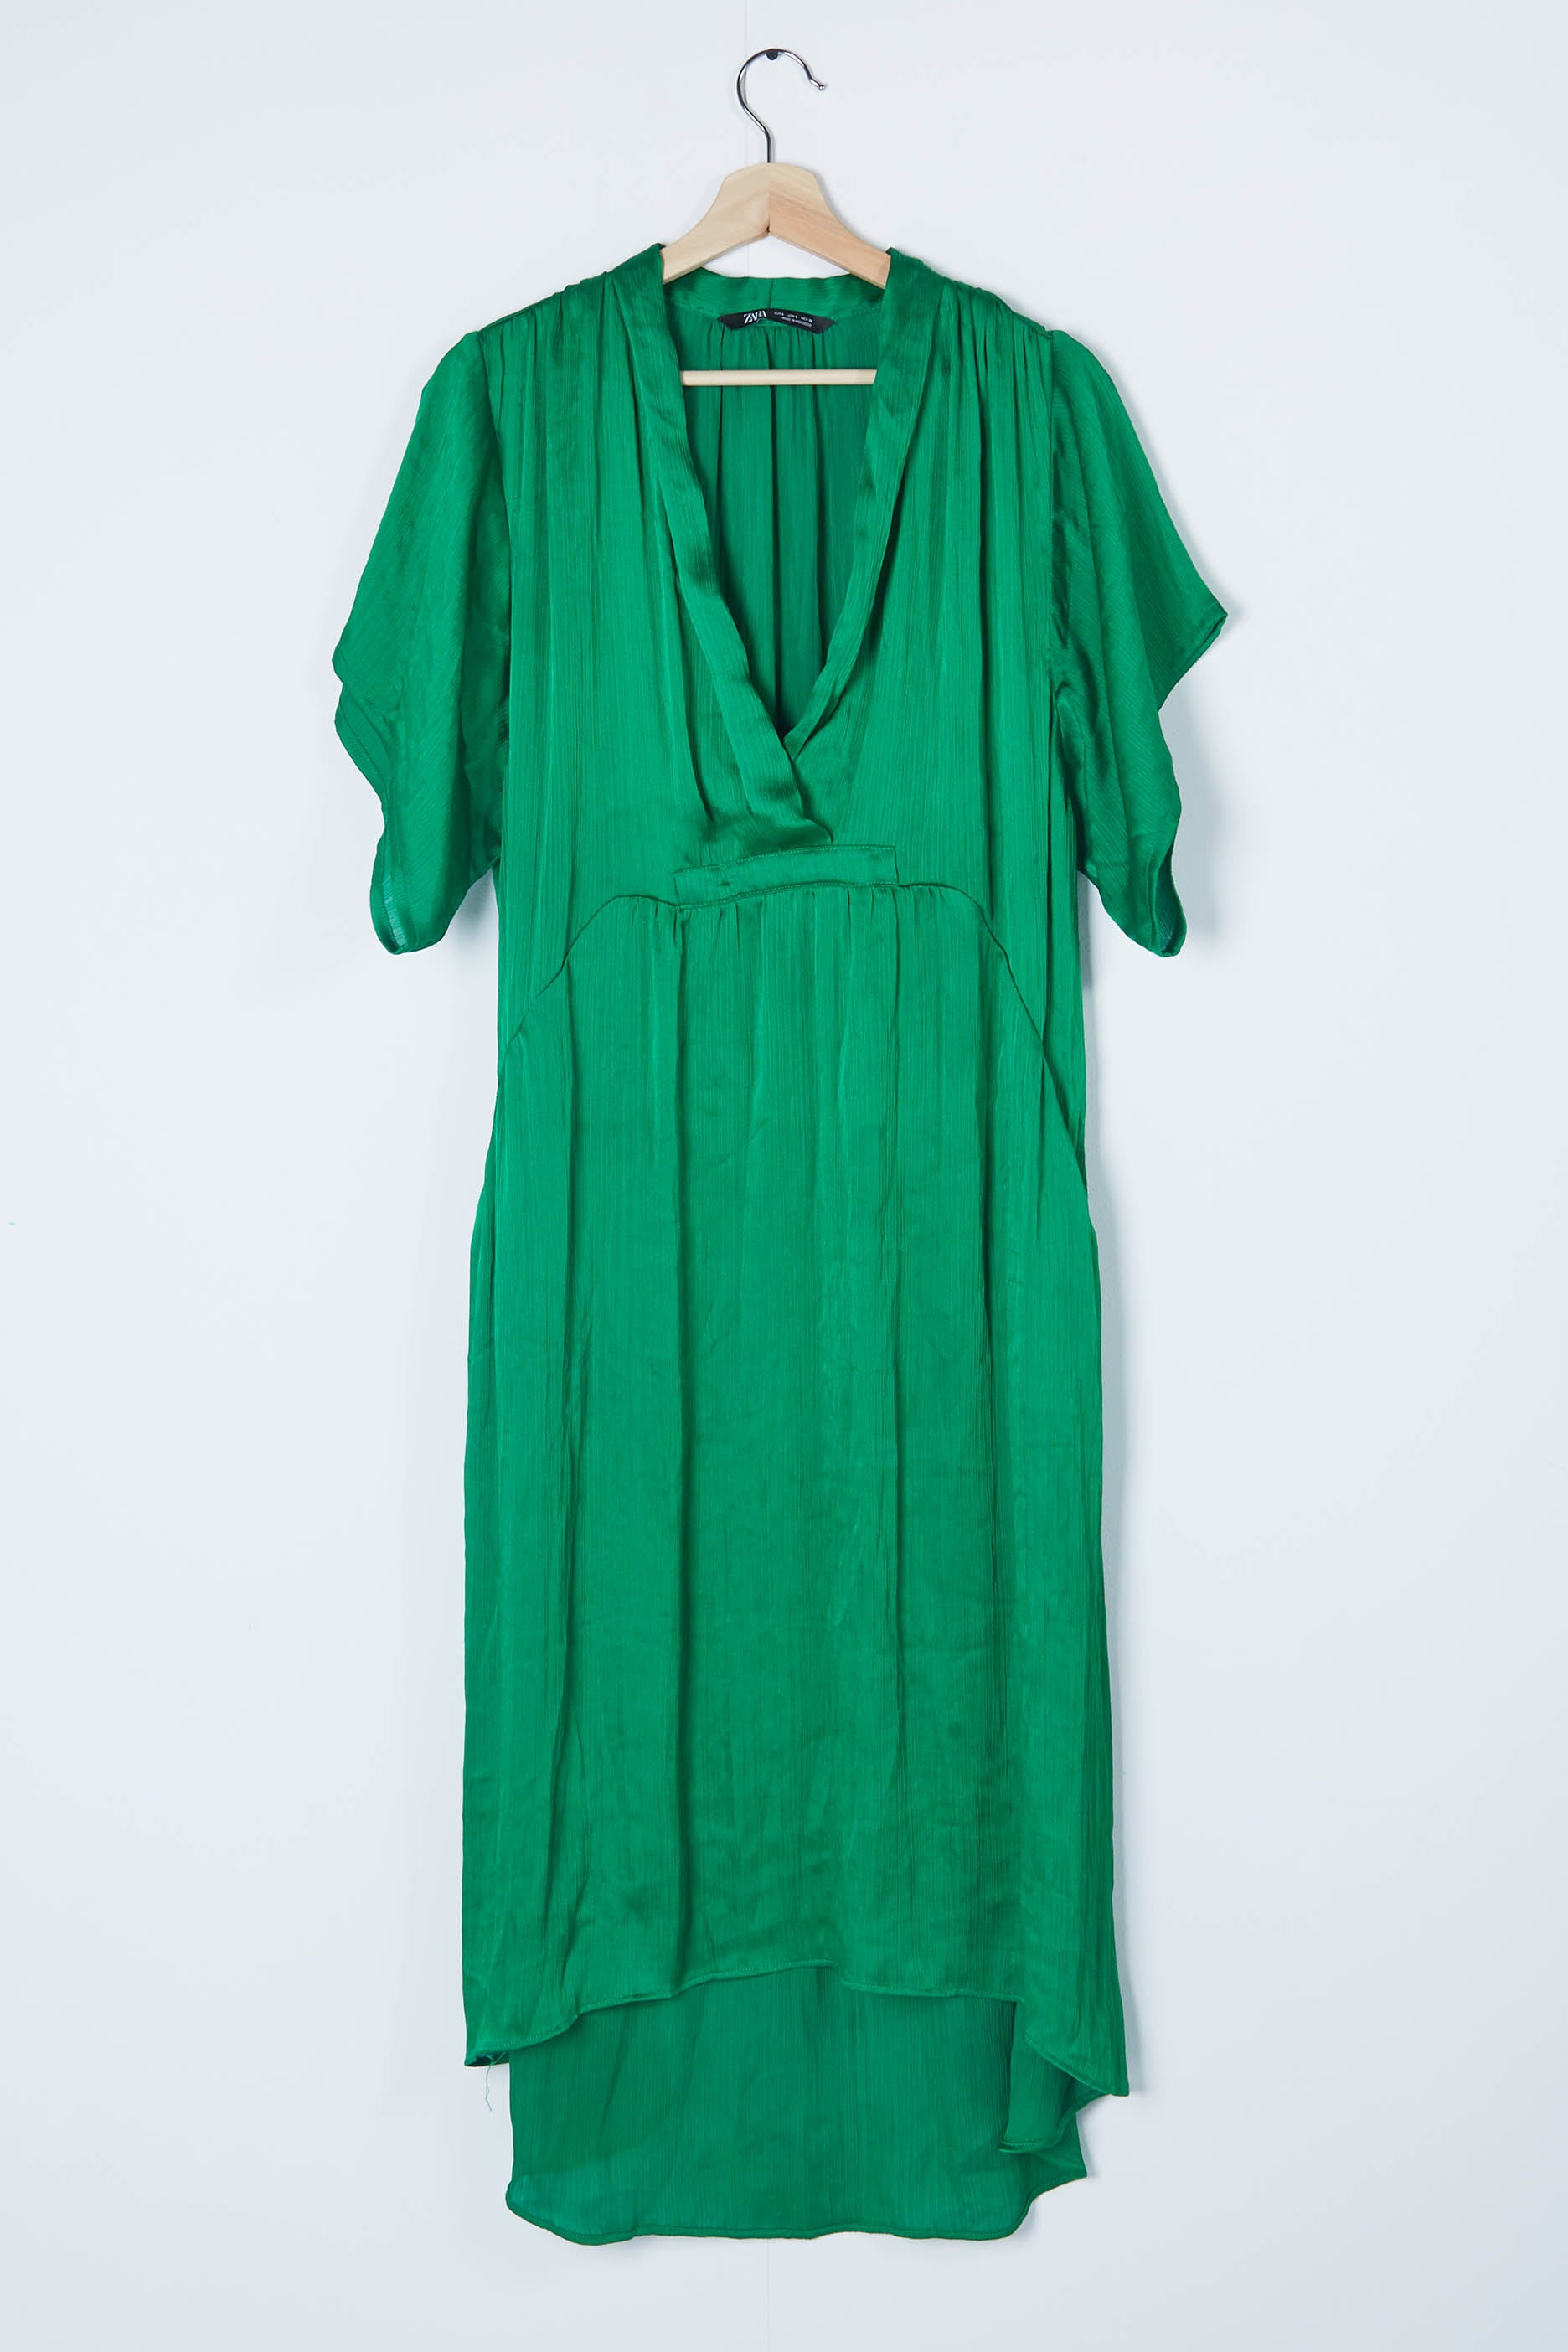 Womens Green Satin Dress (Eu38)